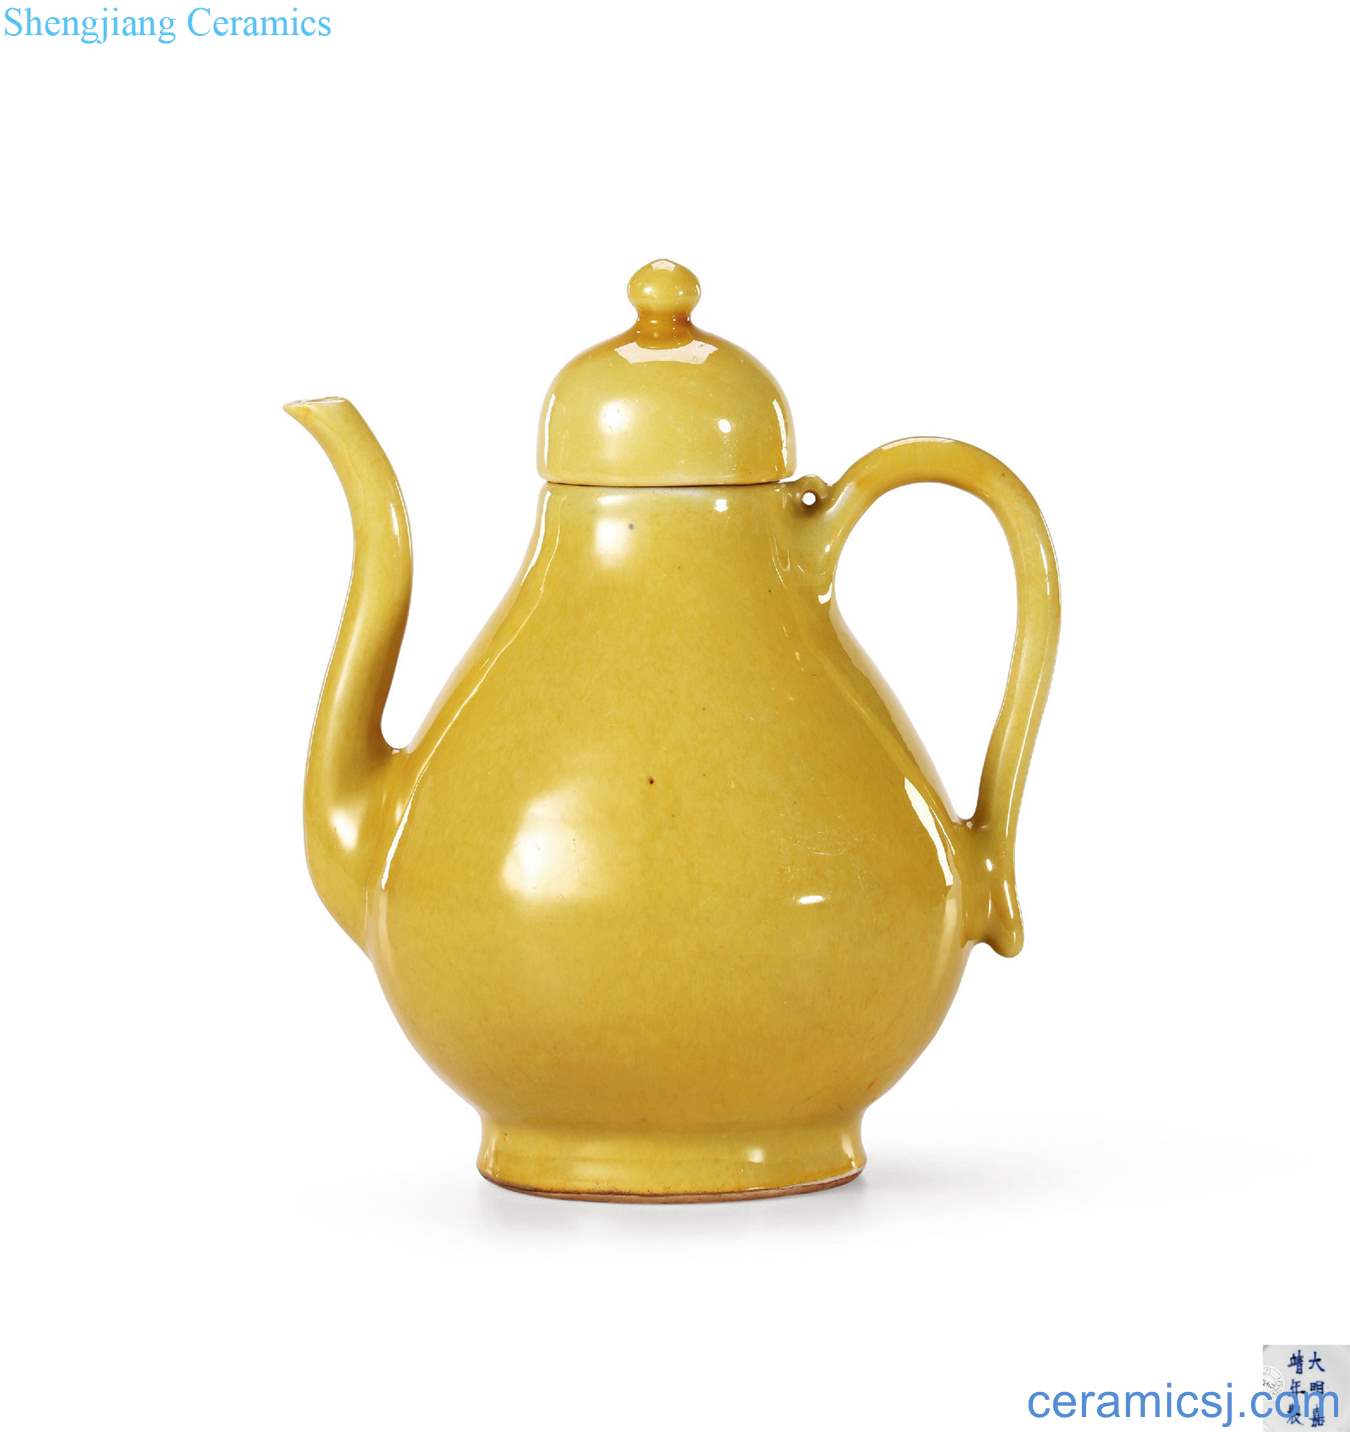 Ming jiajing jiao yellow glaze pear-shaped with cover ewer